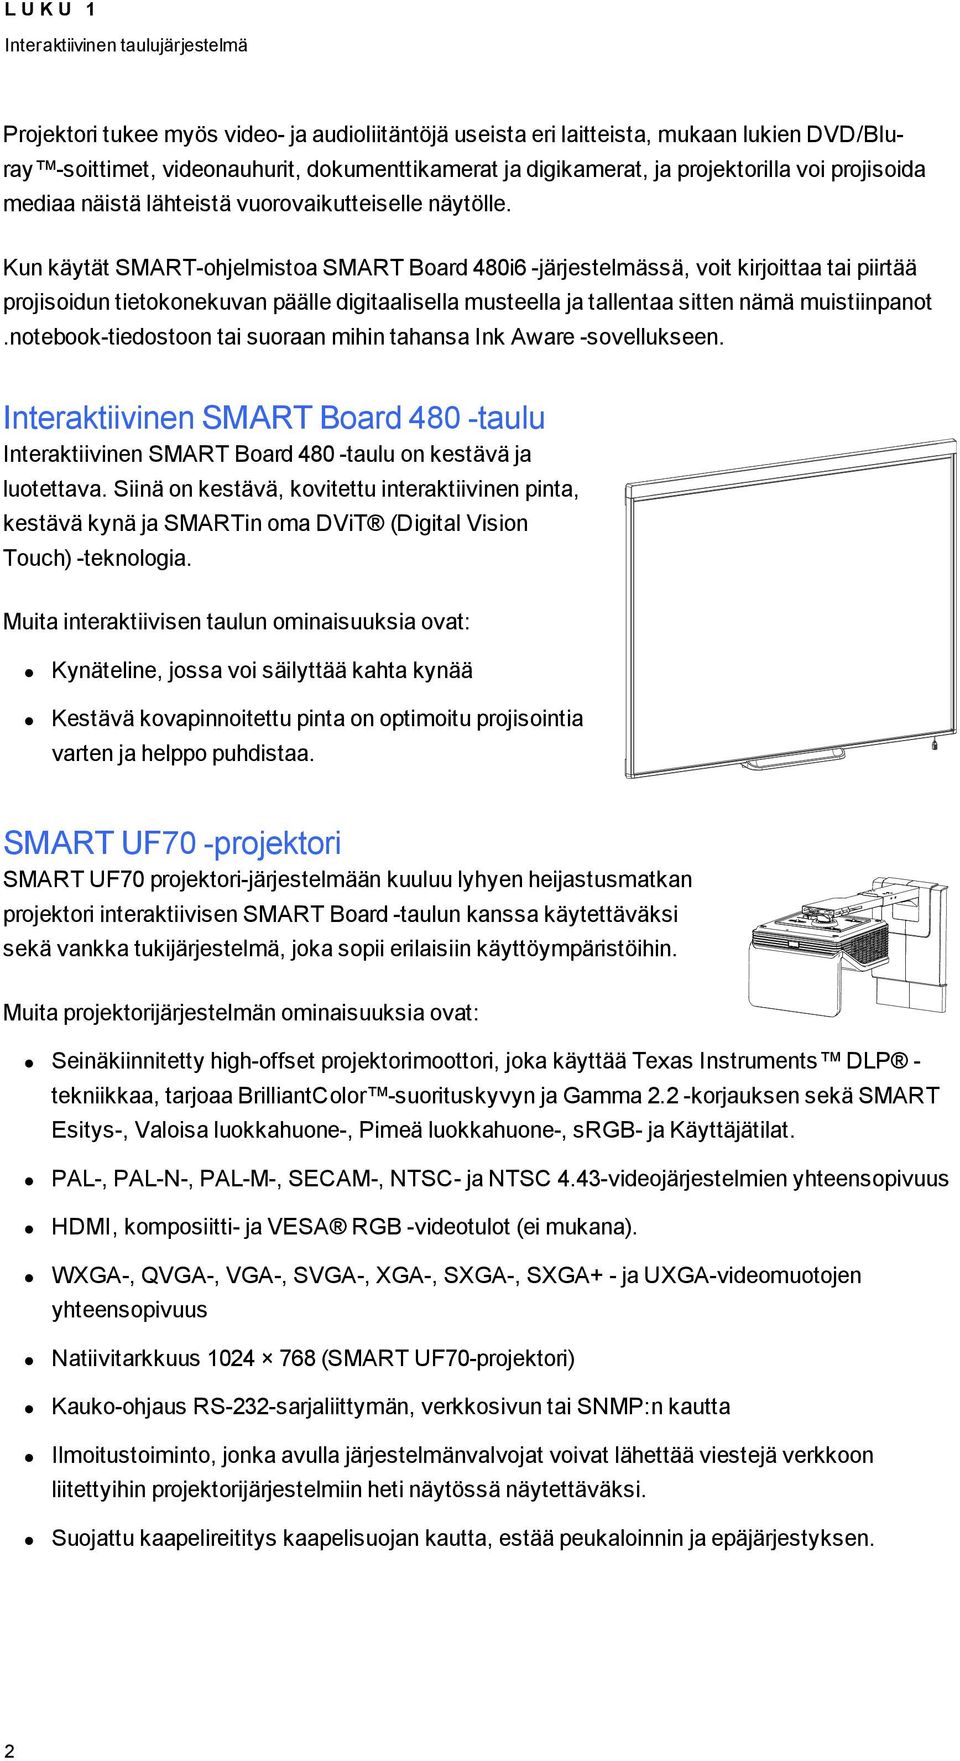 Kun käytät SMART-ohjelmistoa SMART Board 480i6 -järjestelmässä, voit kirjoittaa tai piirtää projisoidun tietokonekuvan päälle digitaalisella musteella ja tallentaa sitten nämä muistiinpanot.